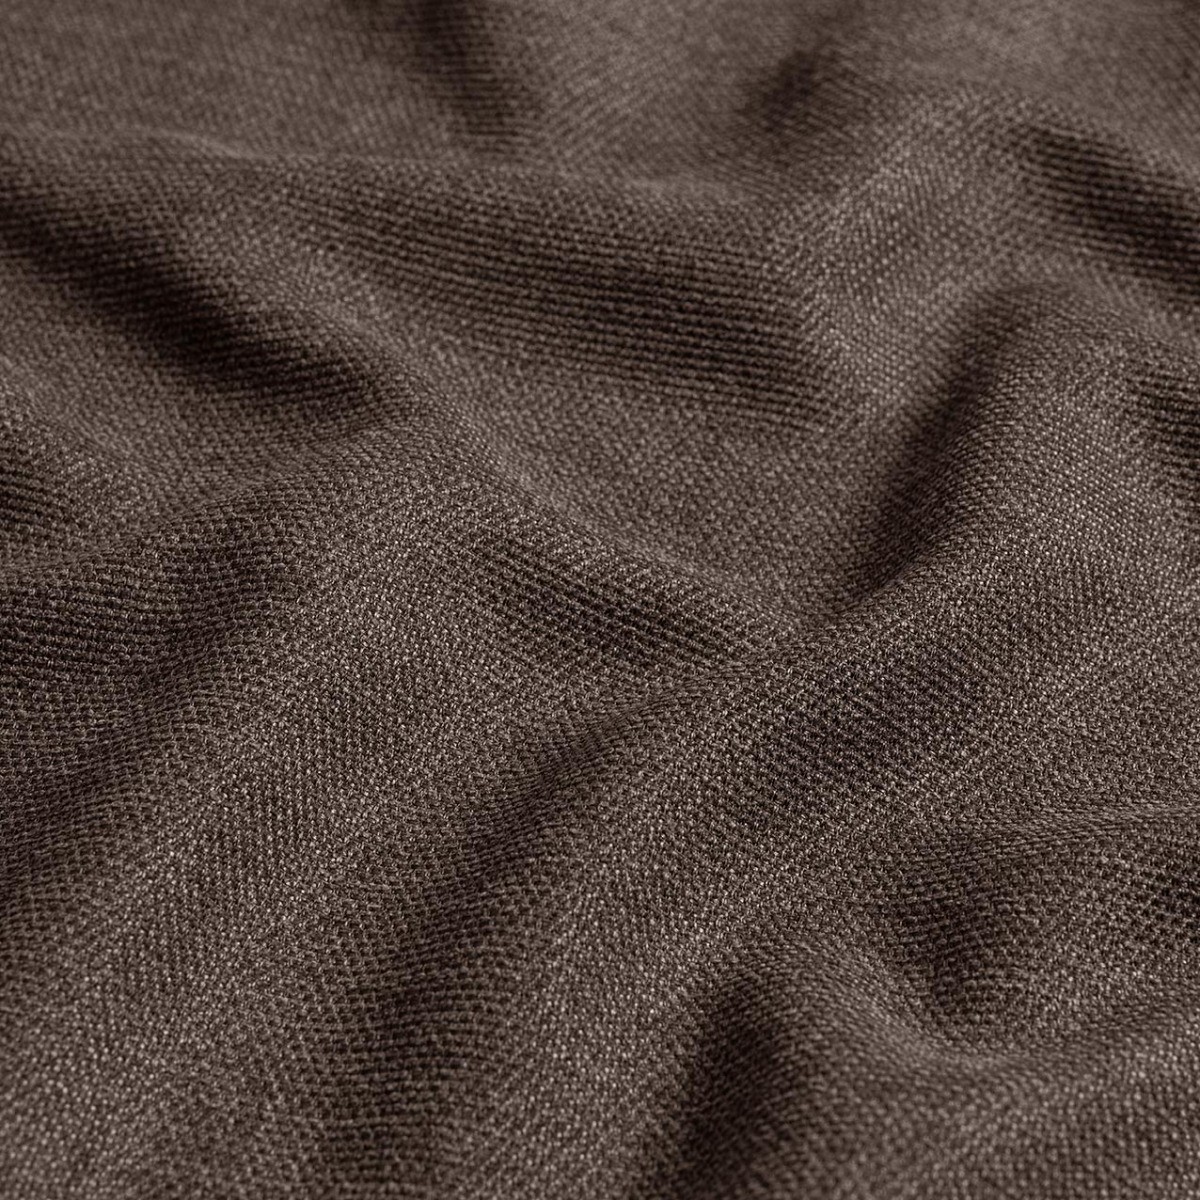  Портьерная ткань SARA CHOCOLATE, ширина 300 см  - Фото